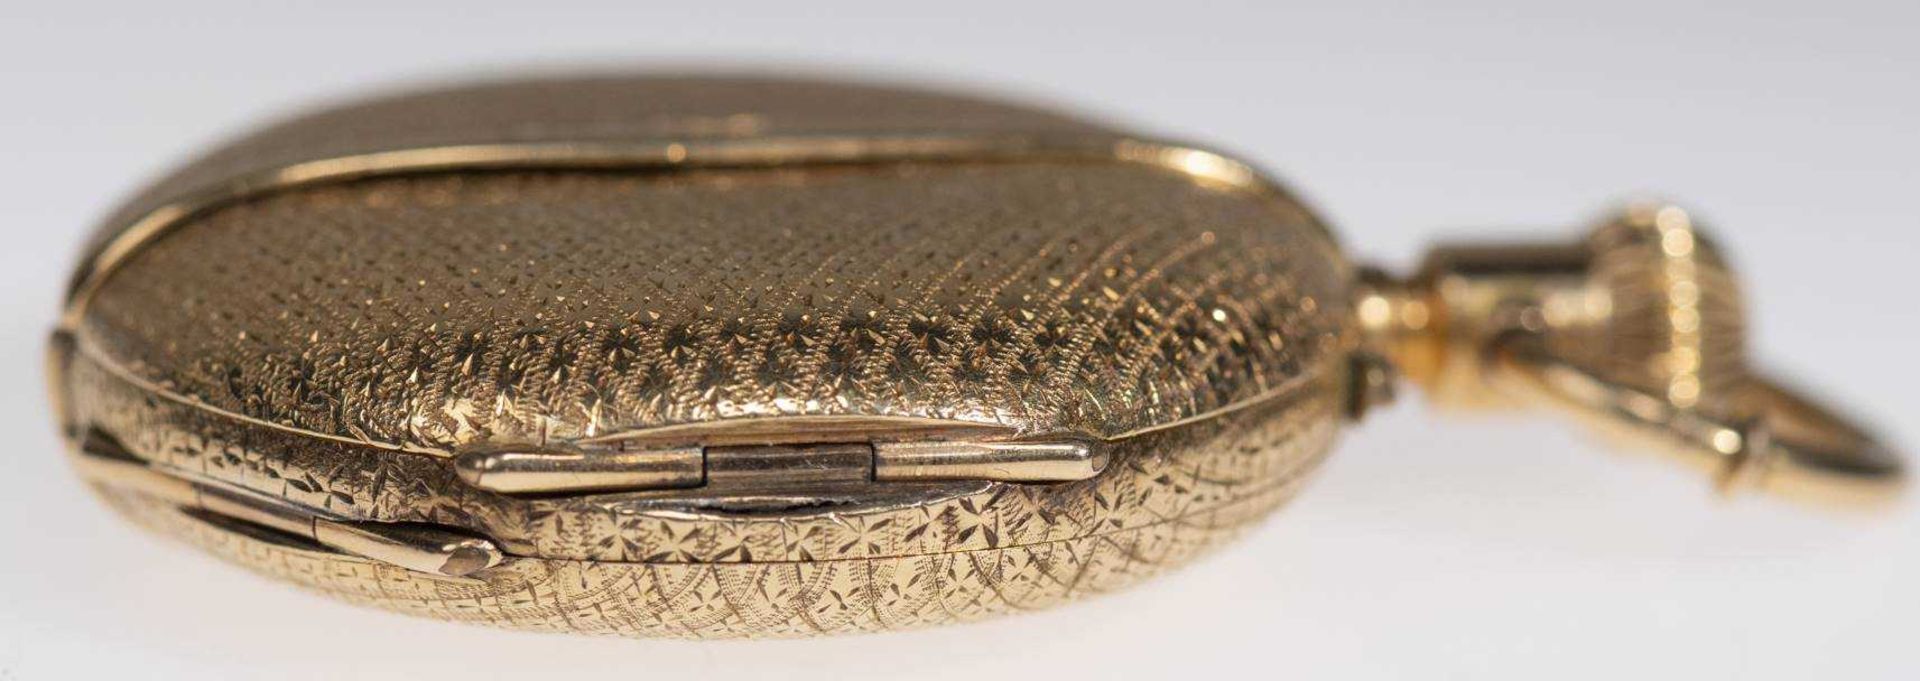 Savonette Taschenuhr. Ca. 36,5mm, 750er Gold, Handaufzug. Emailliertes Ziffernblatt mit goldenen Zei - Bild 5 aus 6